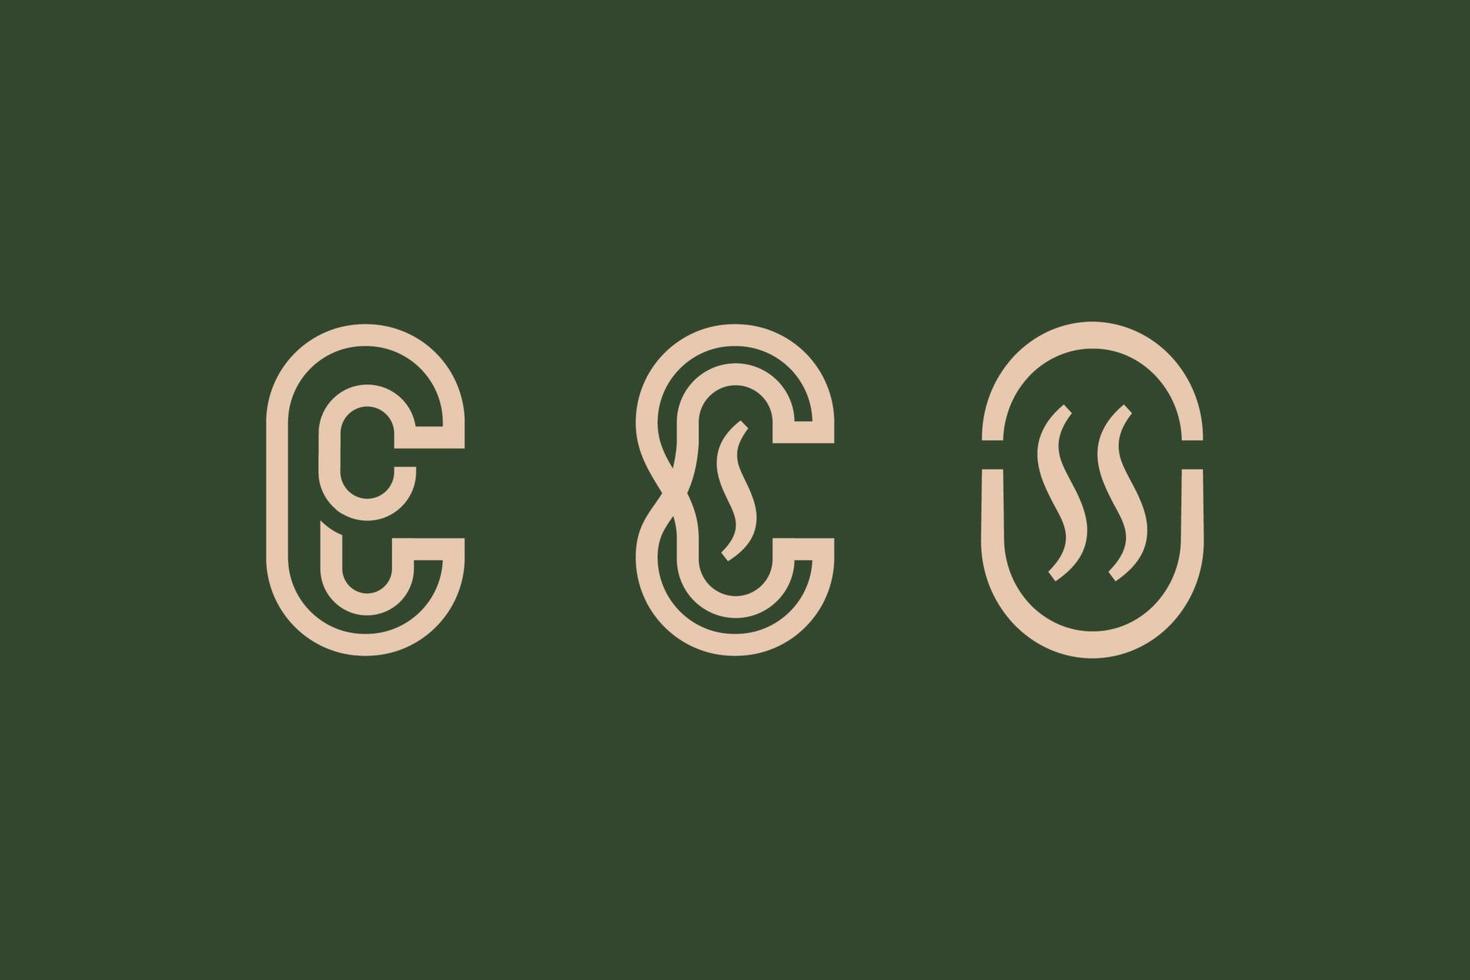 monoline koffie logos reeks met klassiek stijl vector